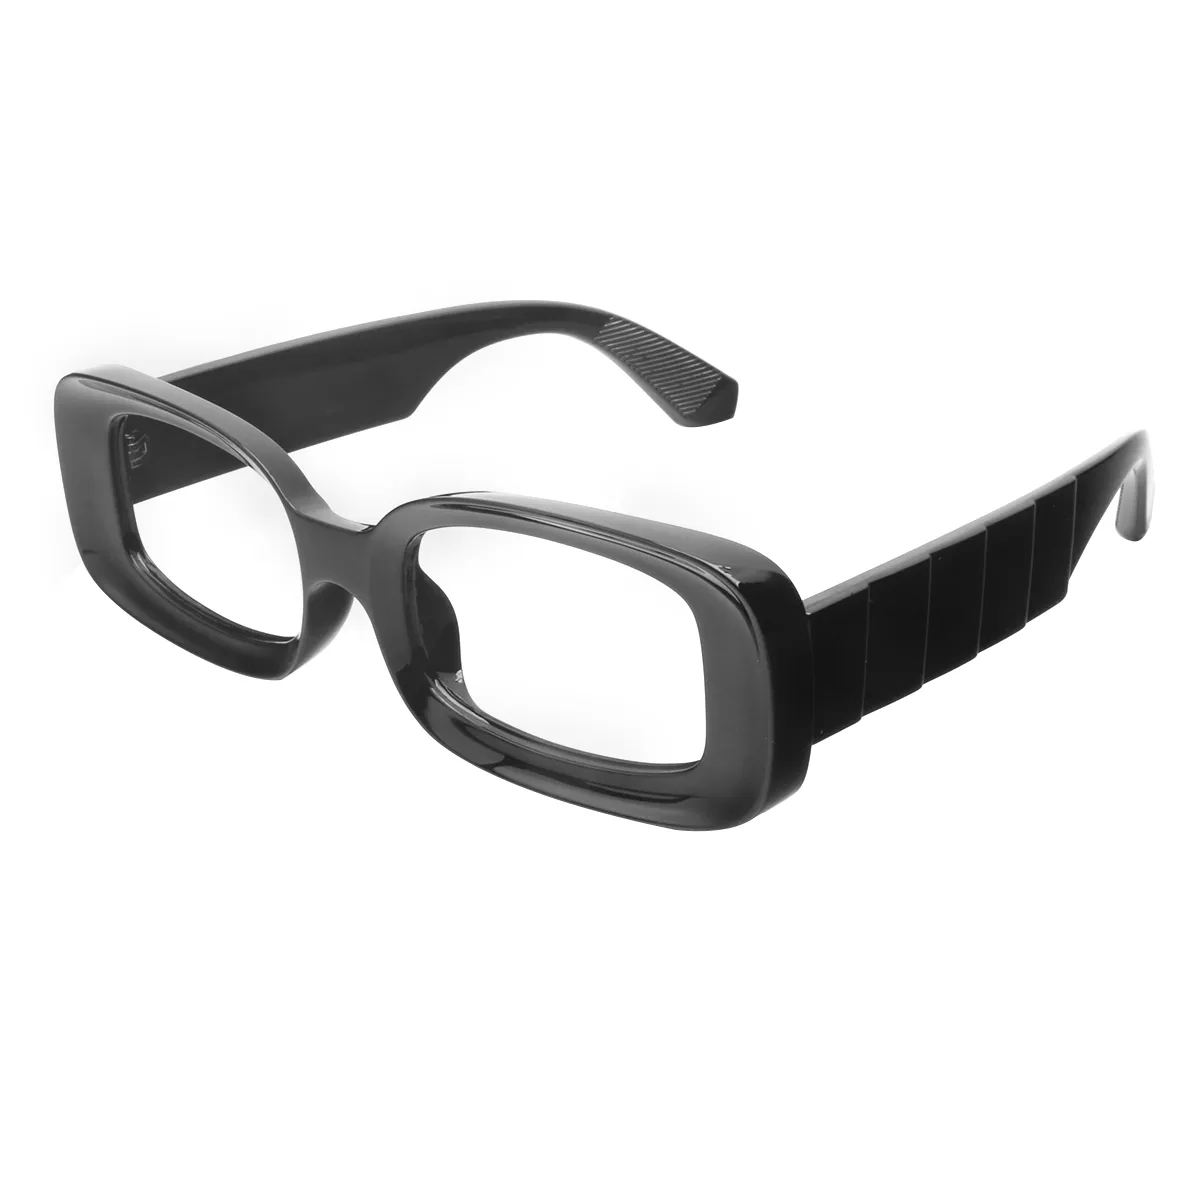 Fashion Oval Zebra Eyeglasses for Women & Men